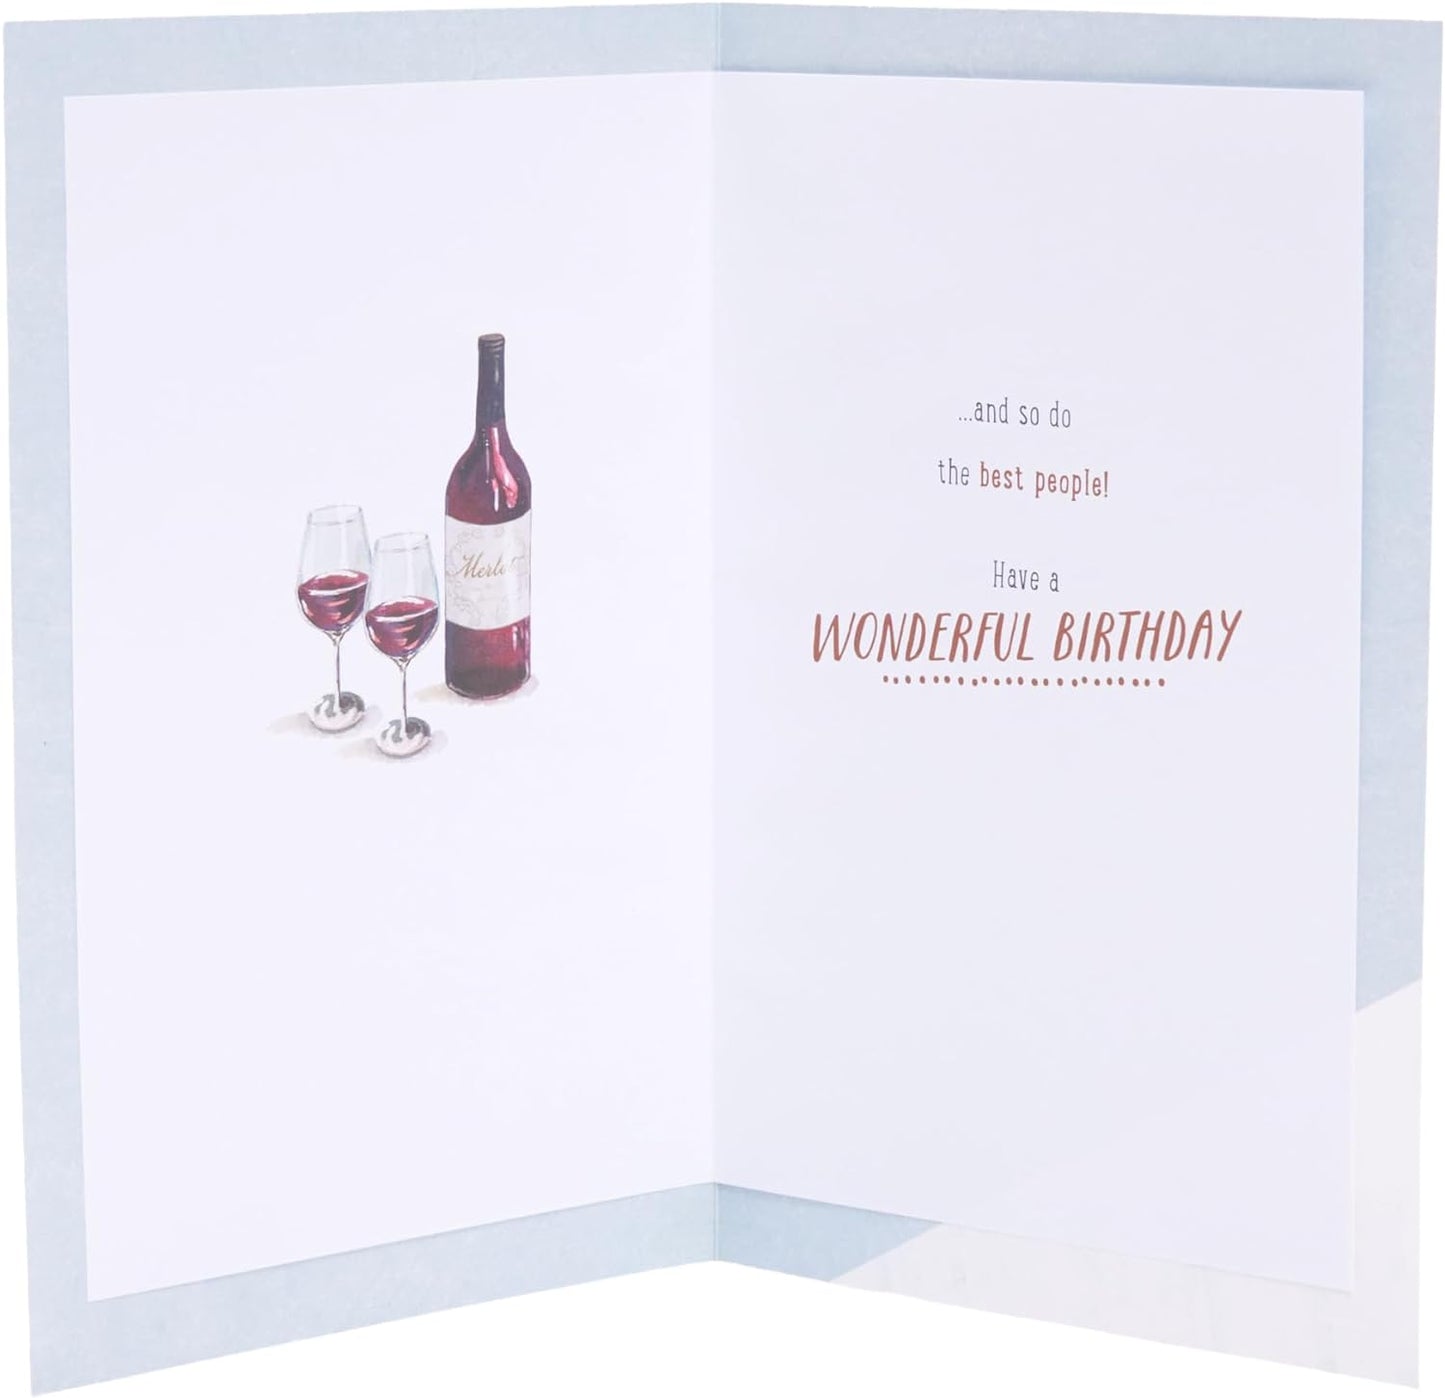 Watch & Wine Design Birthday Card